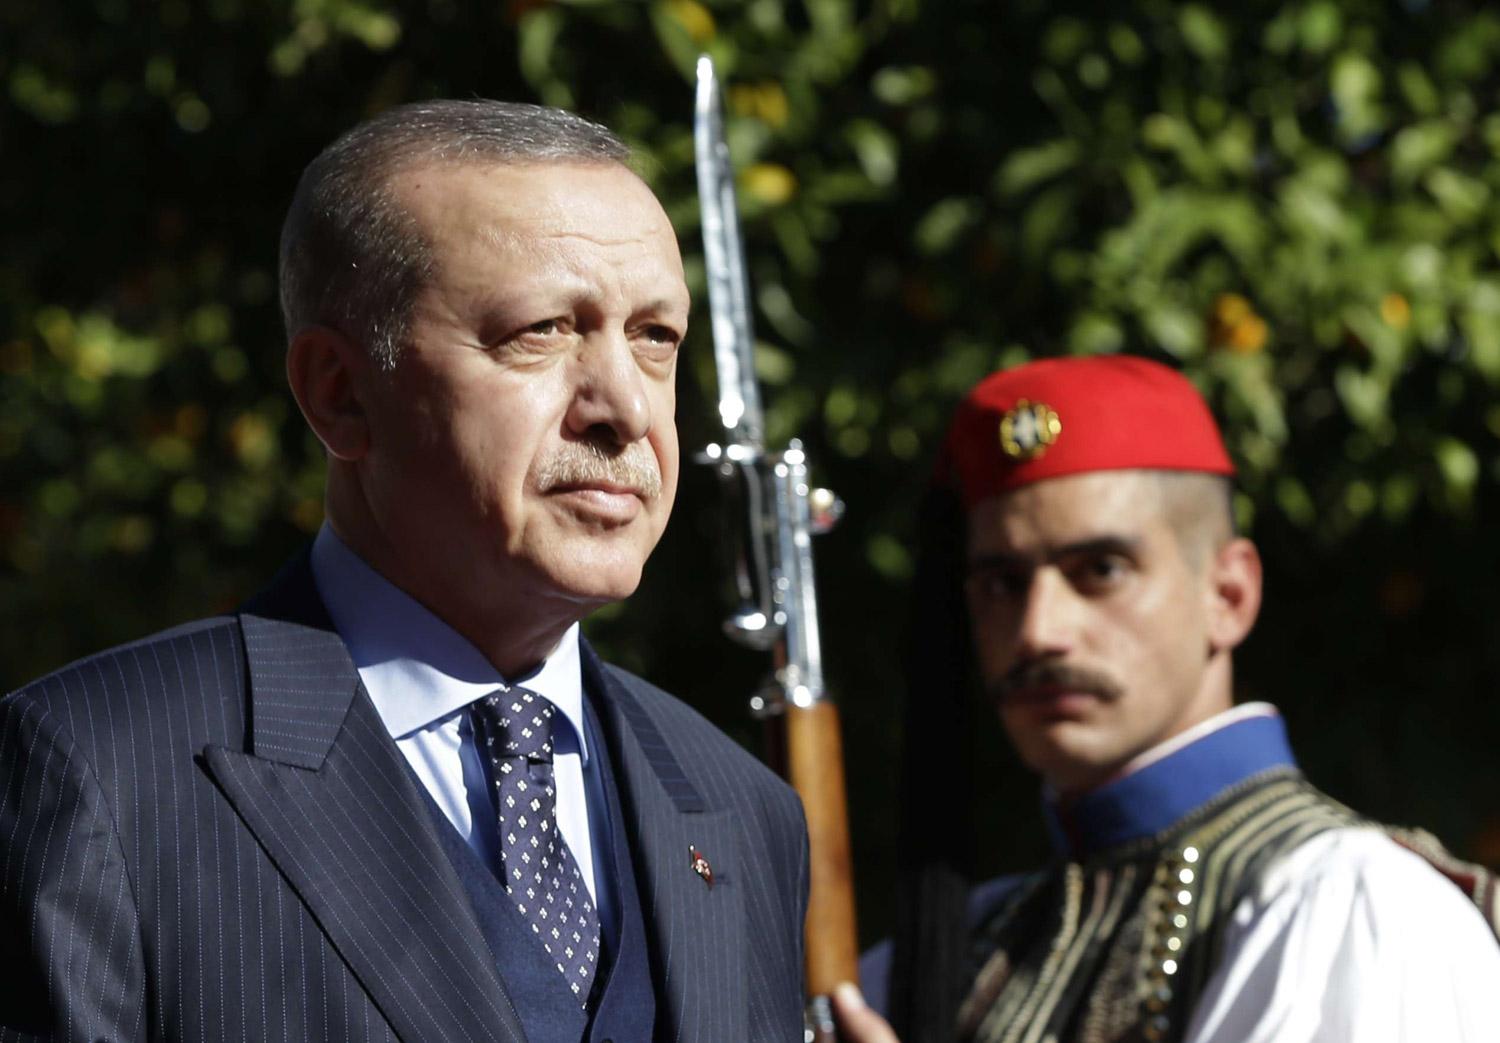 بعد سوريا وليبيا ومصر والسعودية والهند وقبرص.. أردوغان المسعور يؤجج الصراع مع اليونان